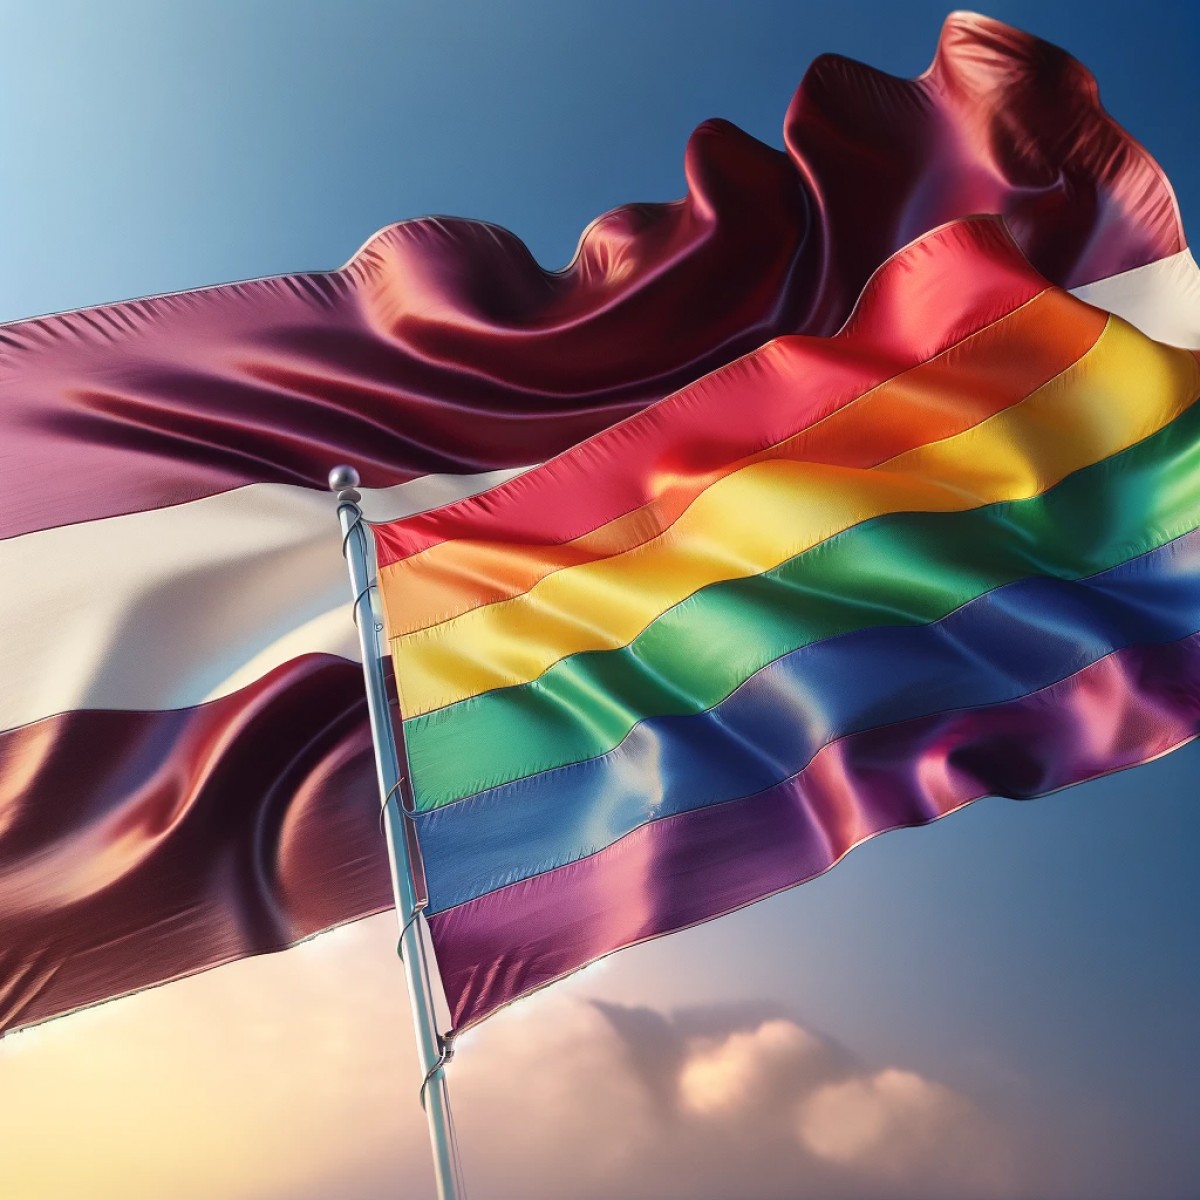 La Lettonie légalise les unions civiles pour les couples de même sexe, mais les droits restent limités